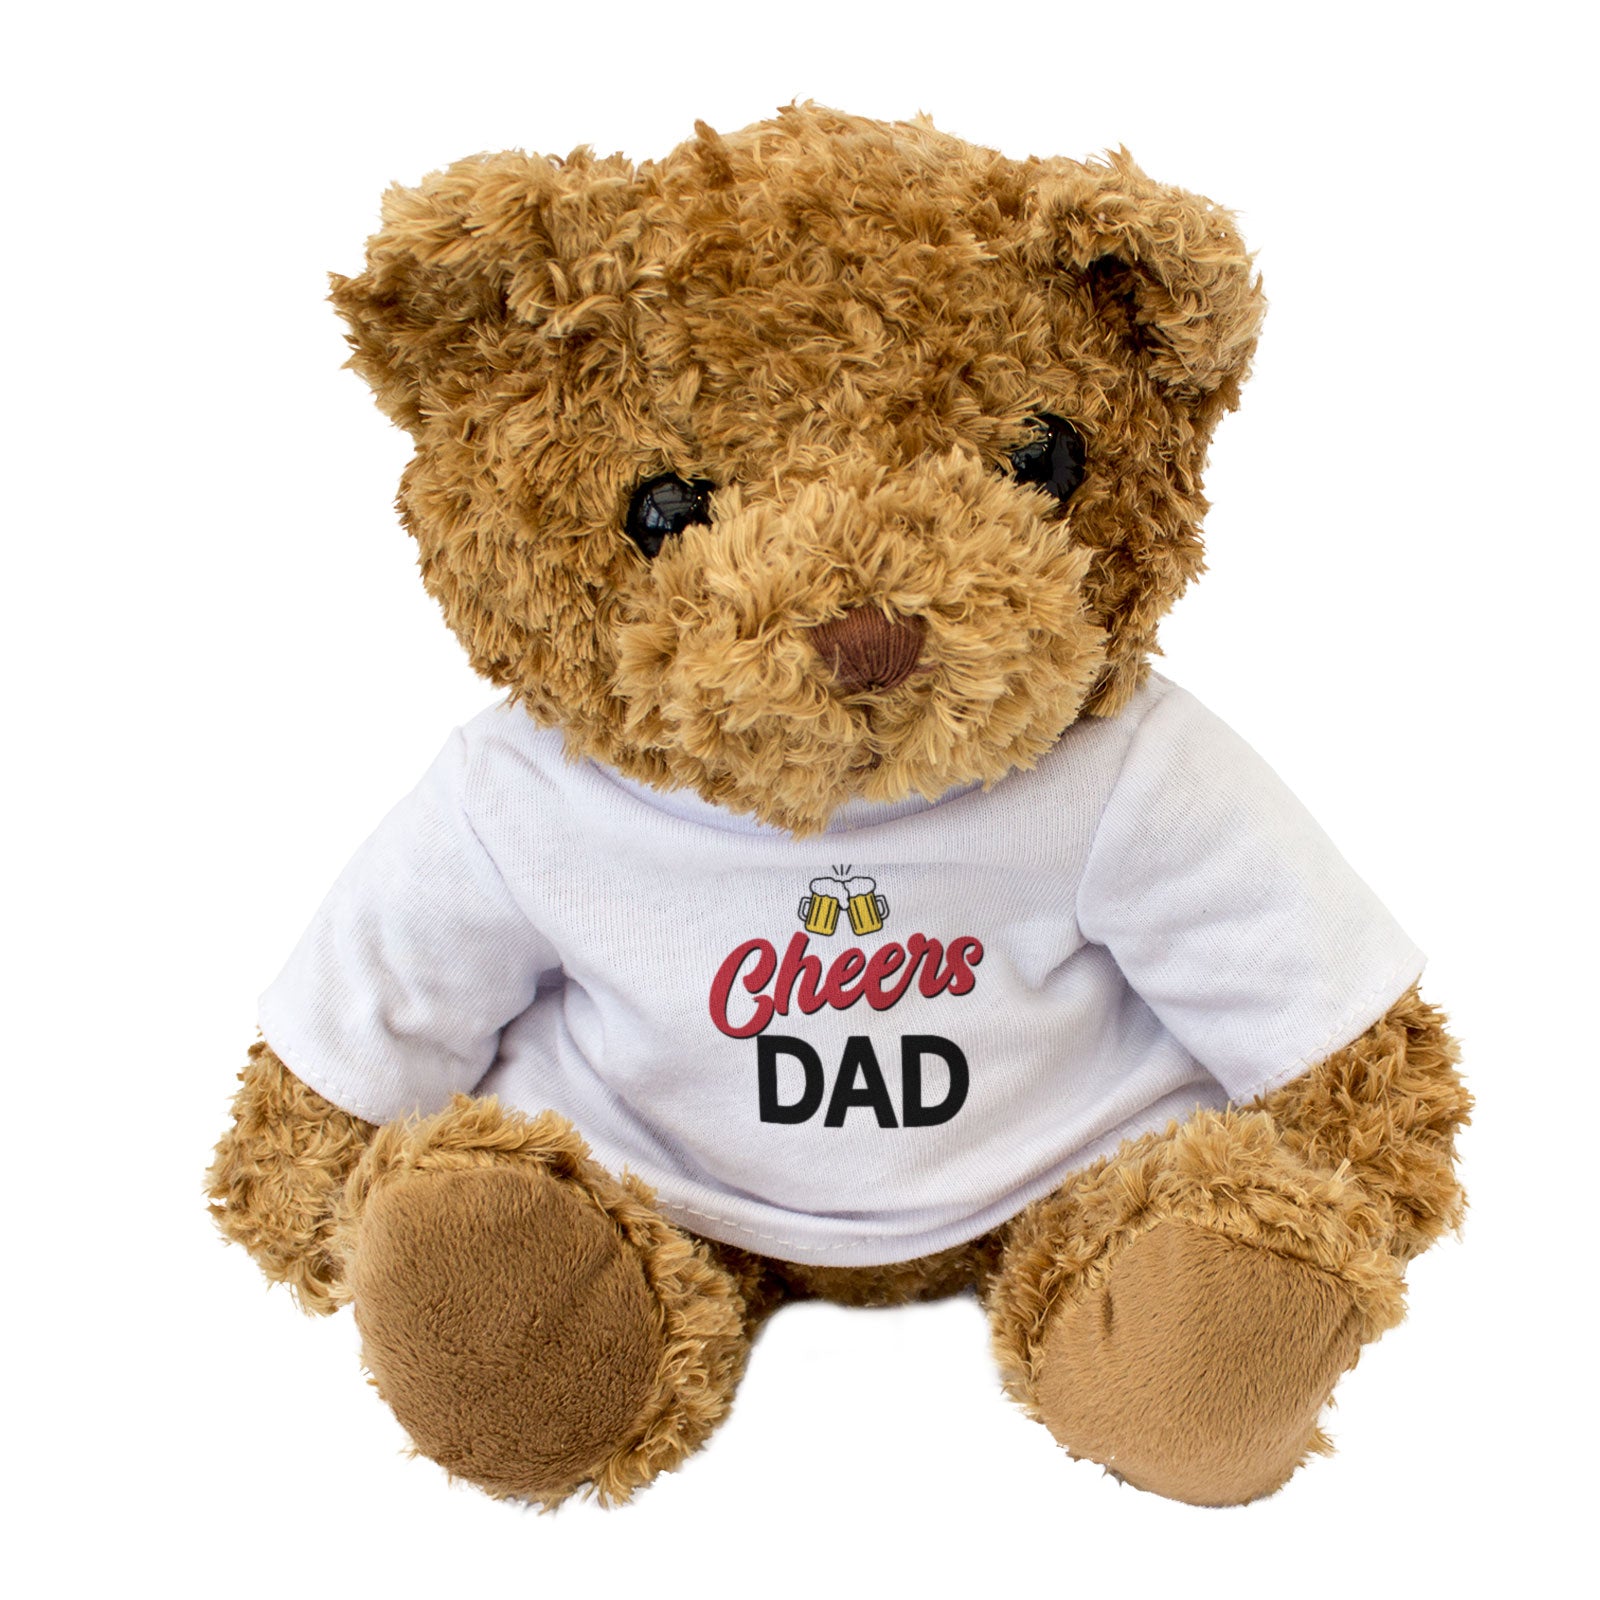 CHEERS DAD - Teddy Bear